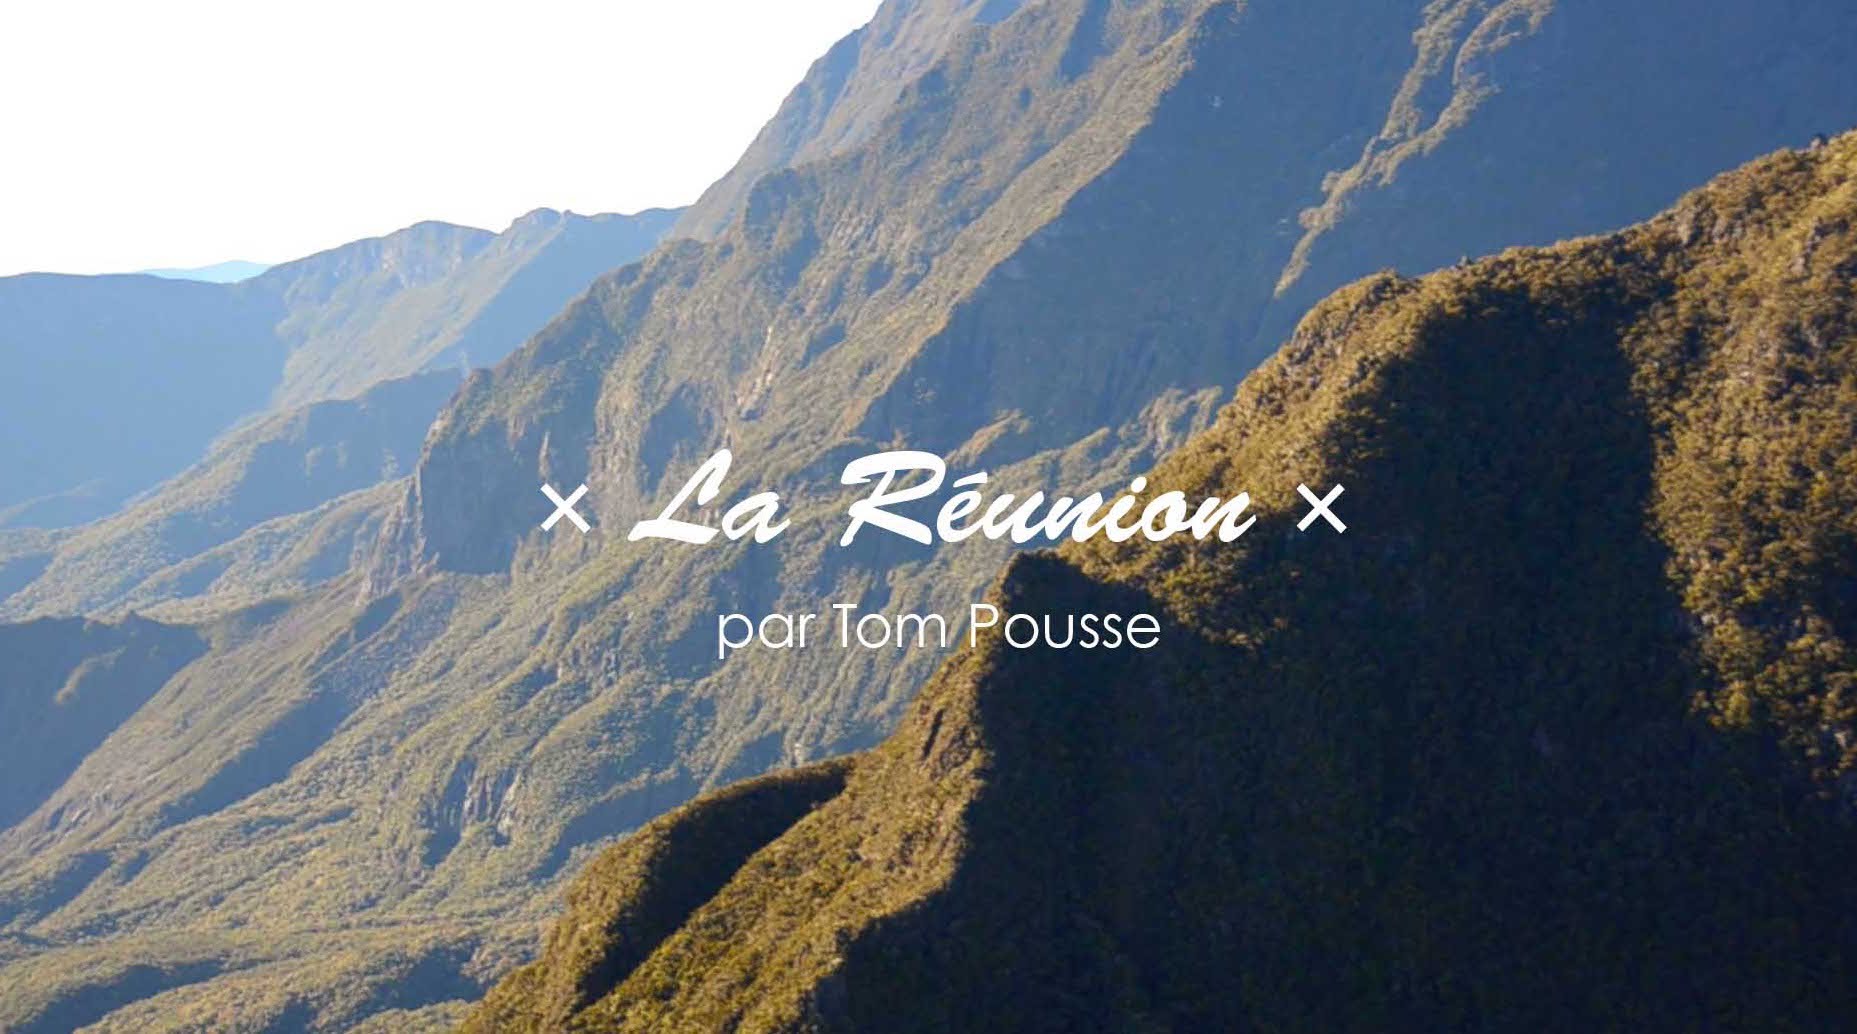 Découvrez La Réunion vu par Tom Pousse